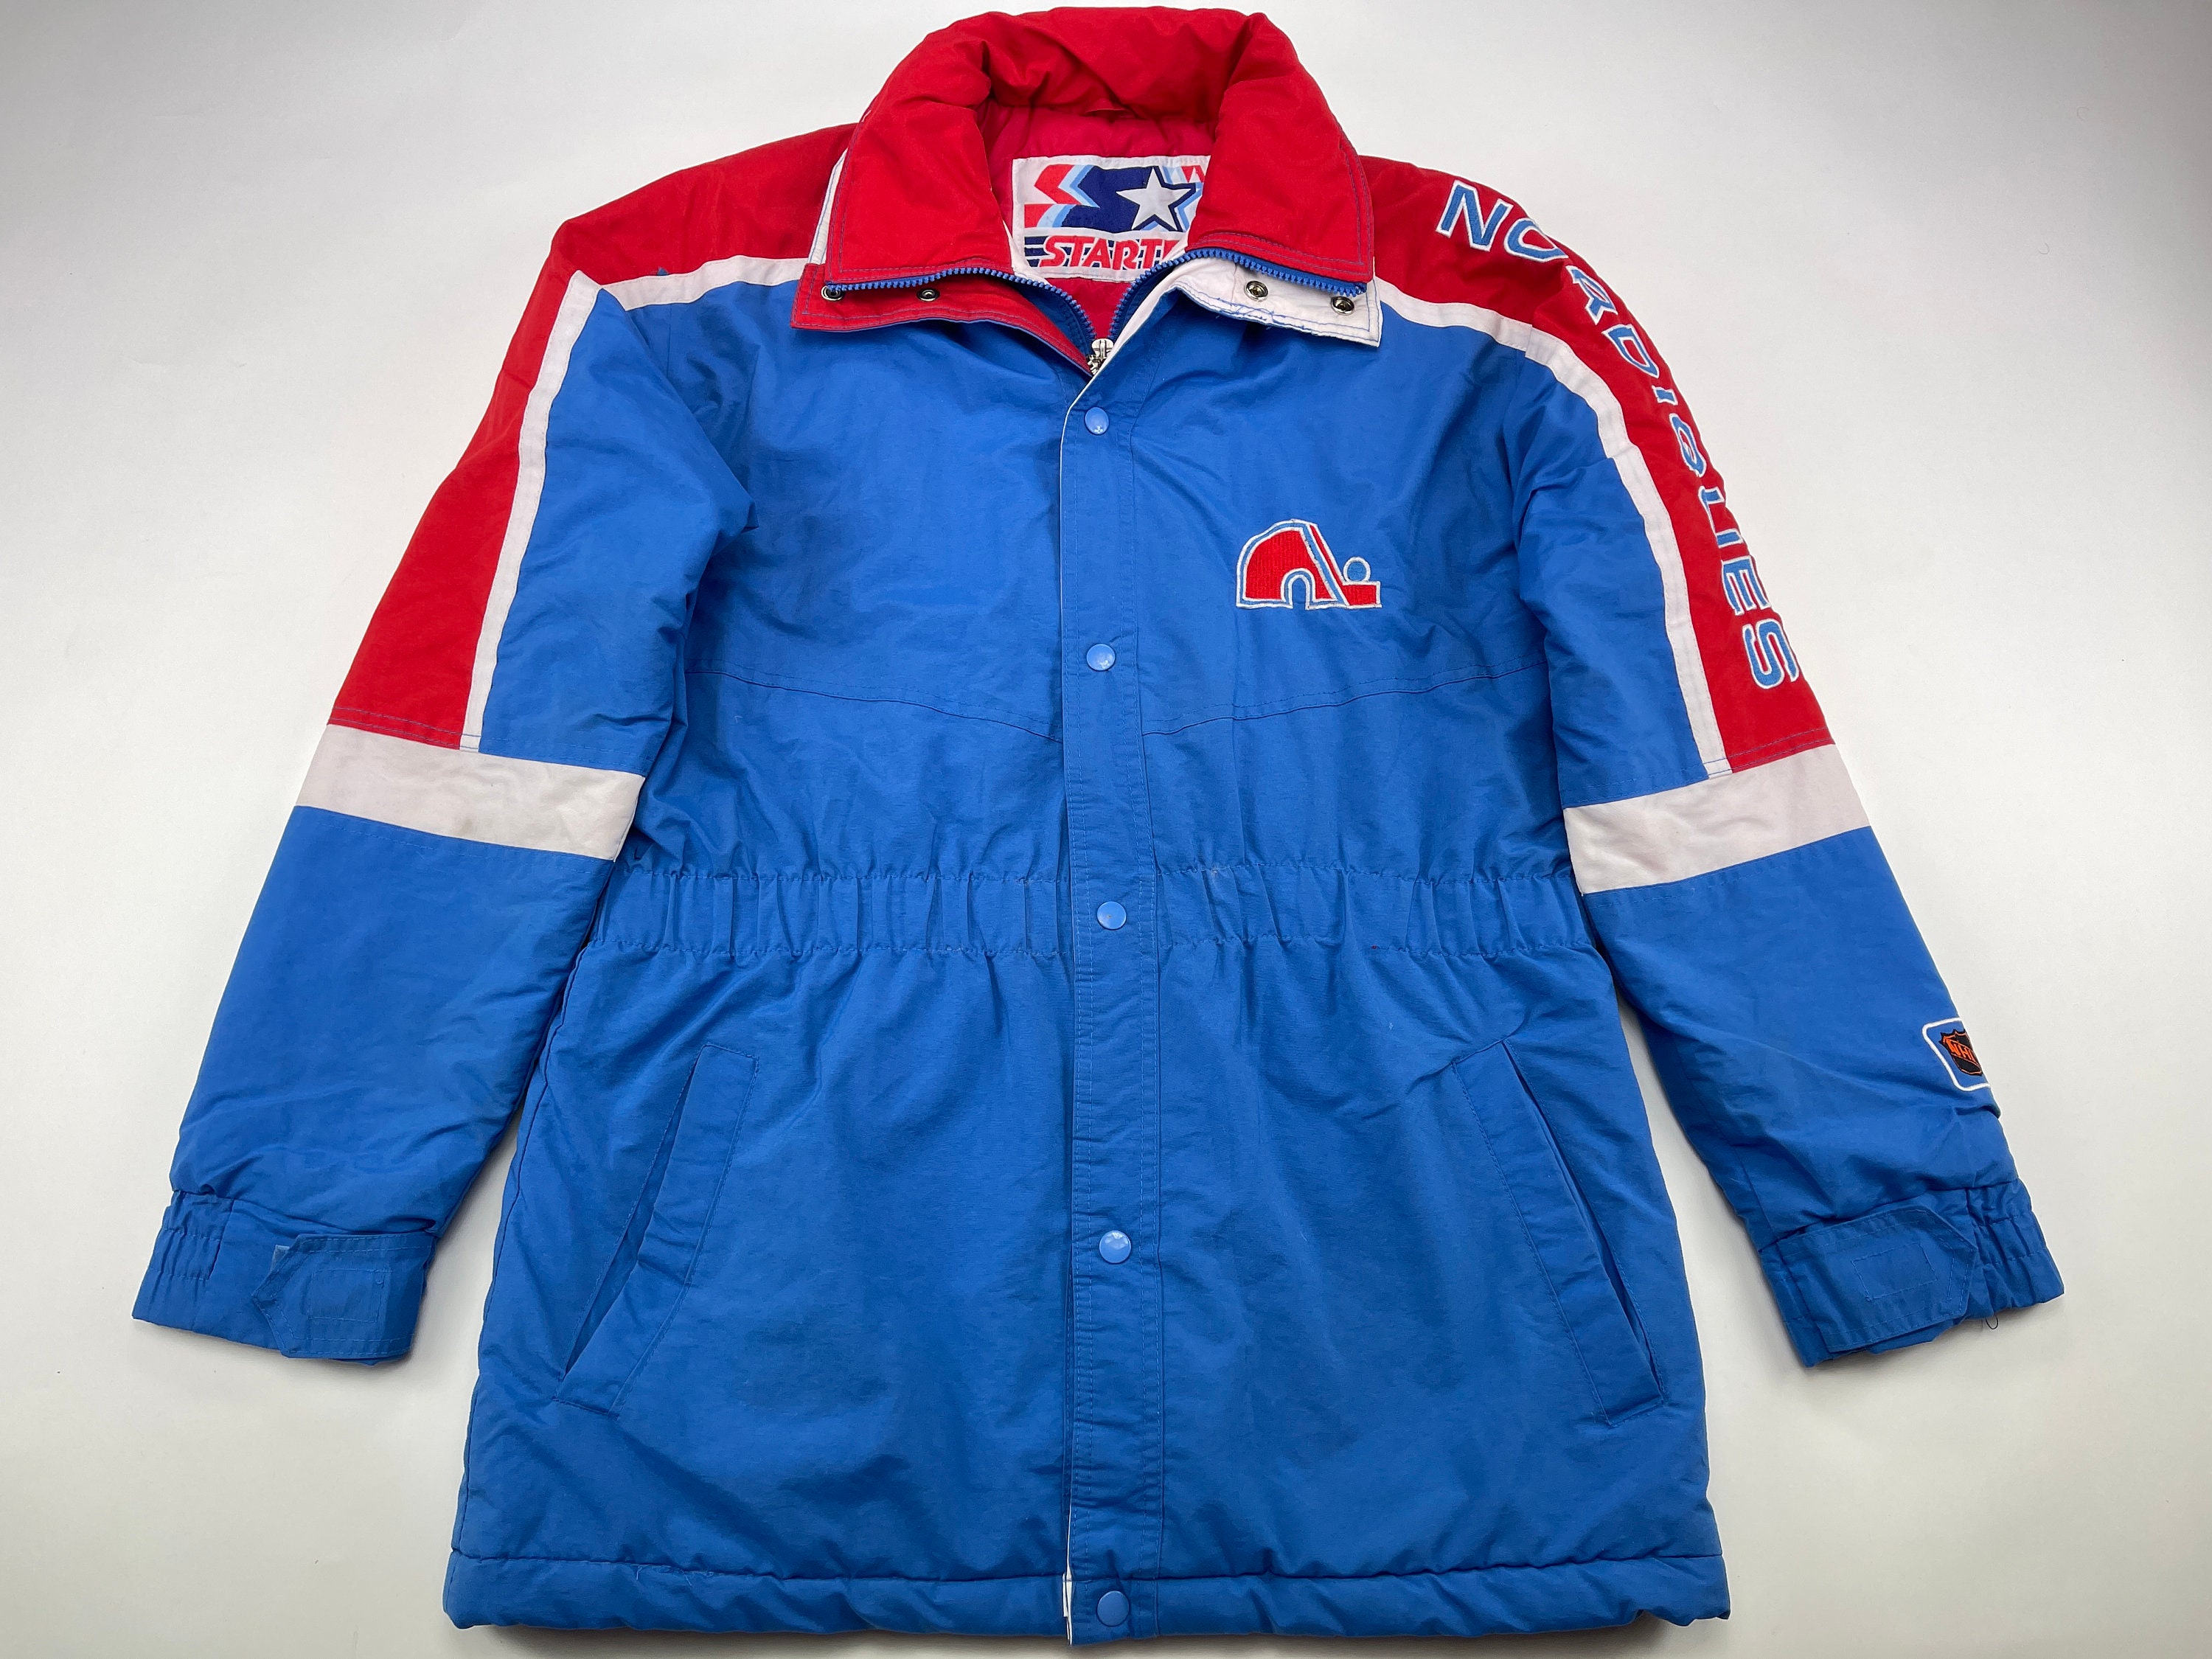 Avalanche “reverse retro” jerseys have Quebec Nordiques flavor